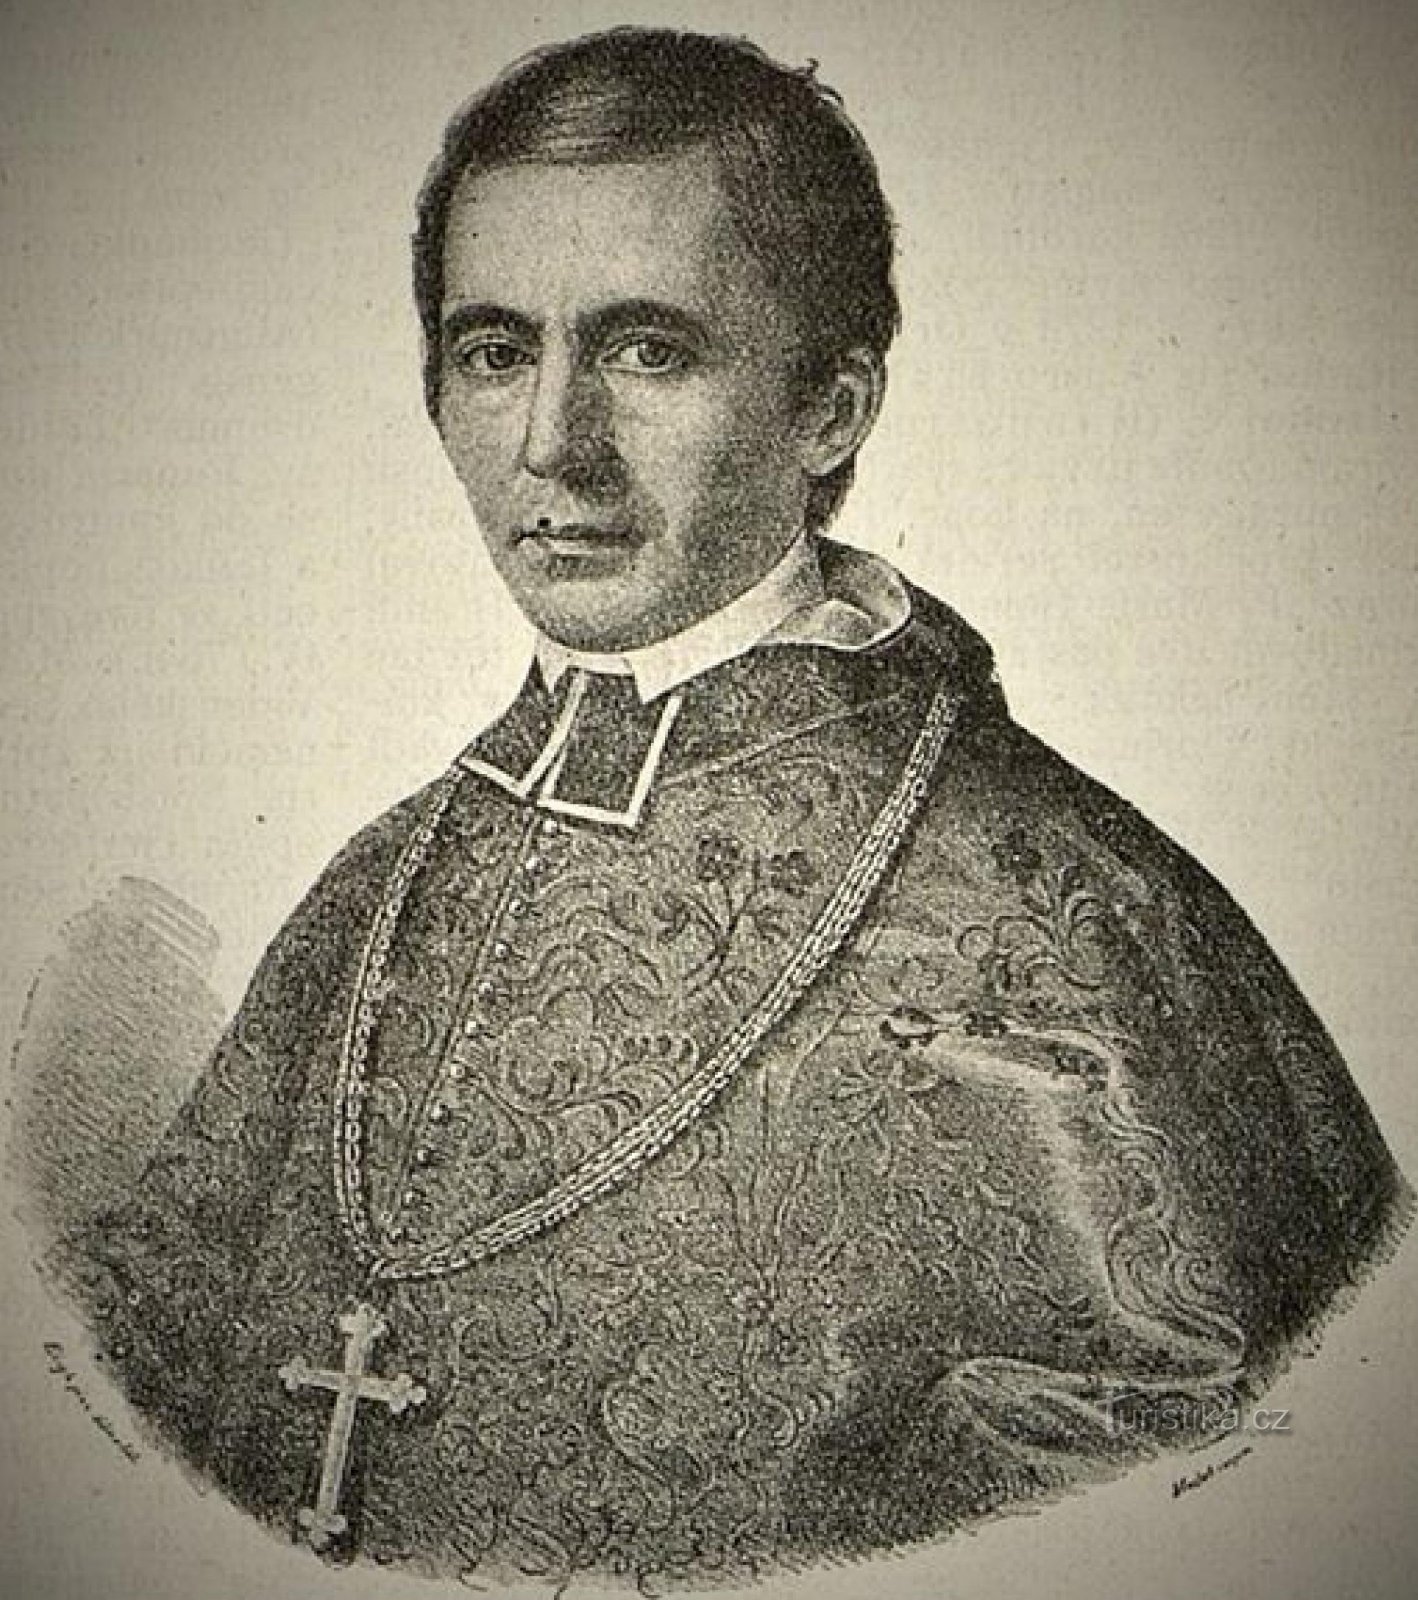 Giám mục Hradec Králové Hradec Králové, Msgr. Tiến sĩ Karel B. Hanl